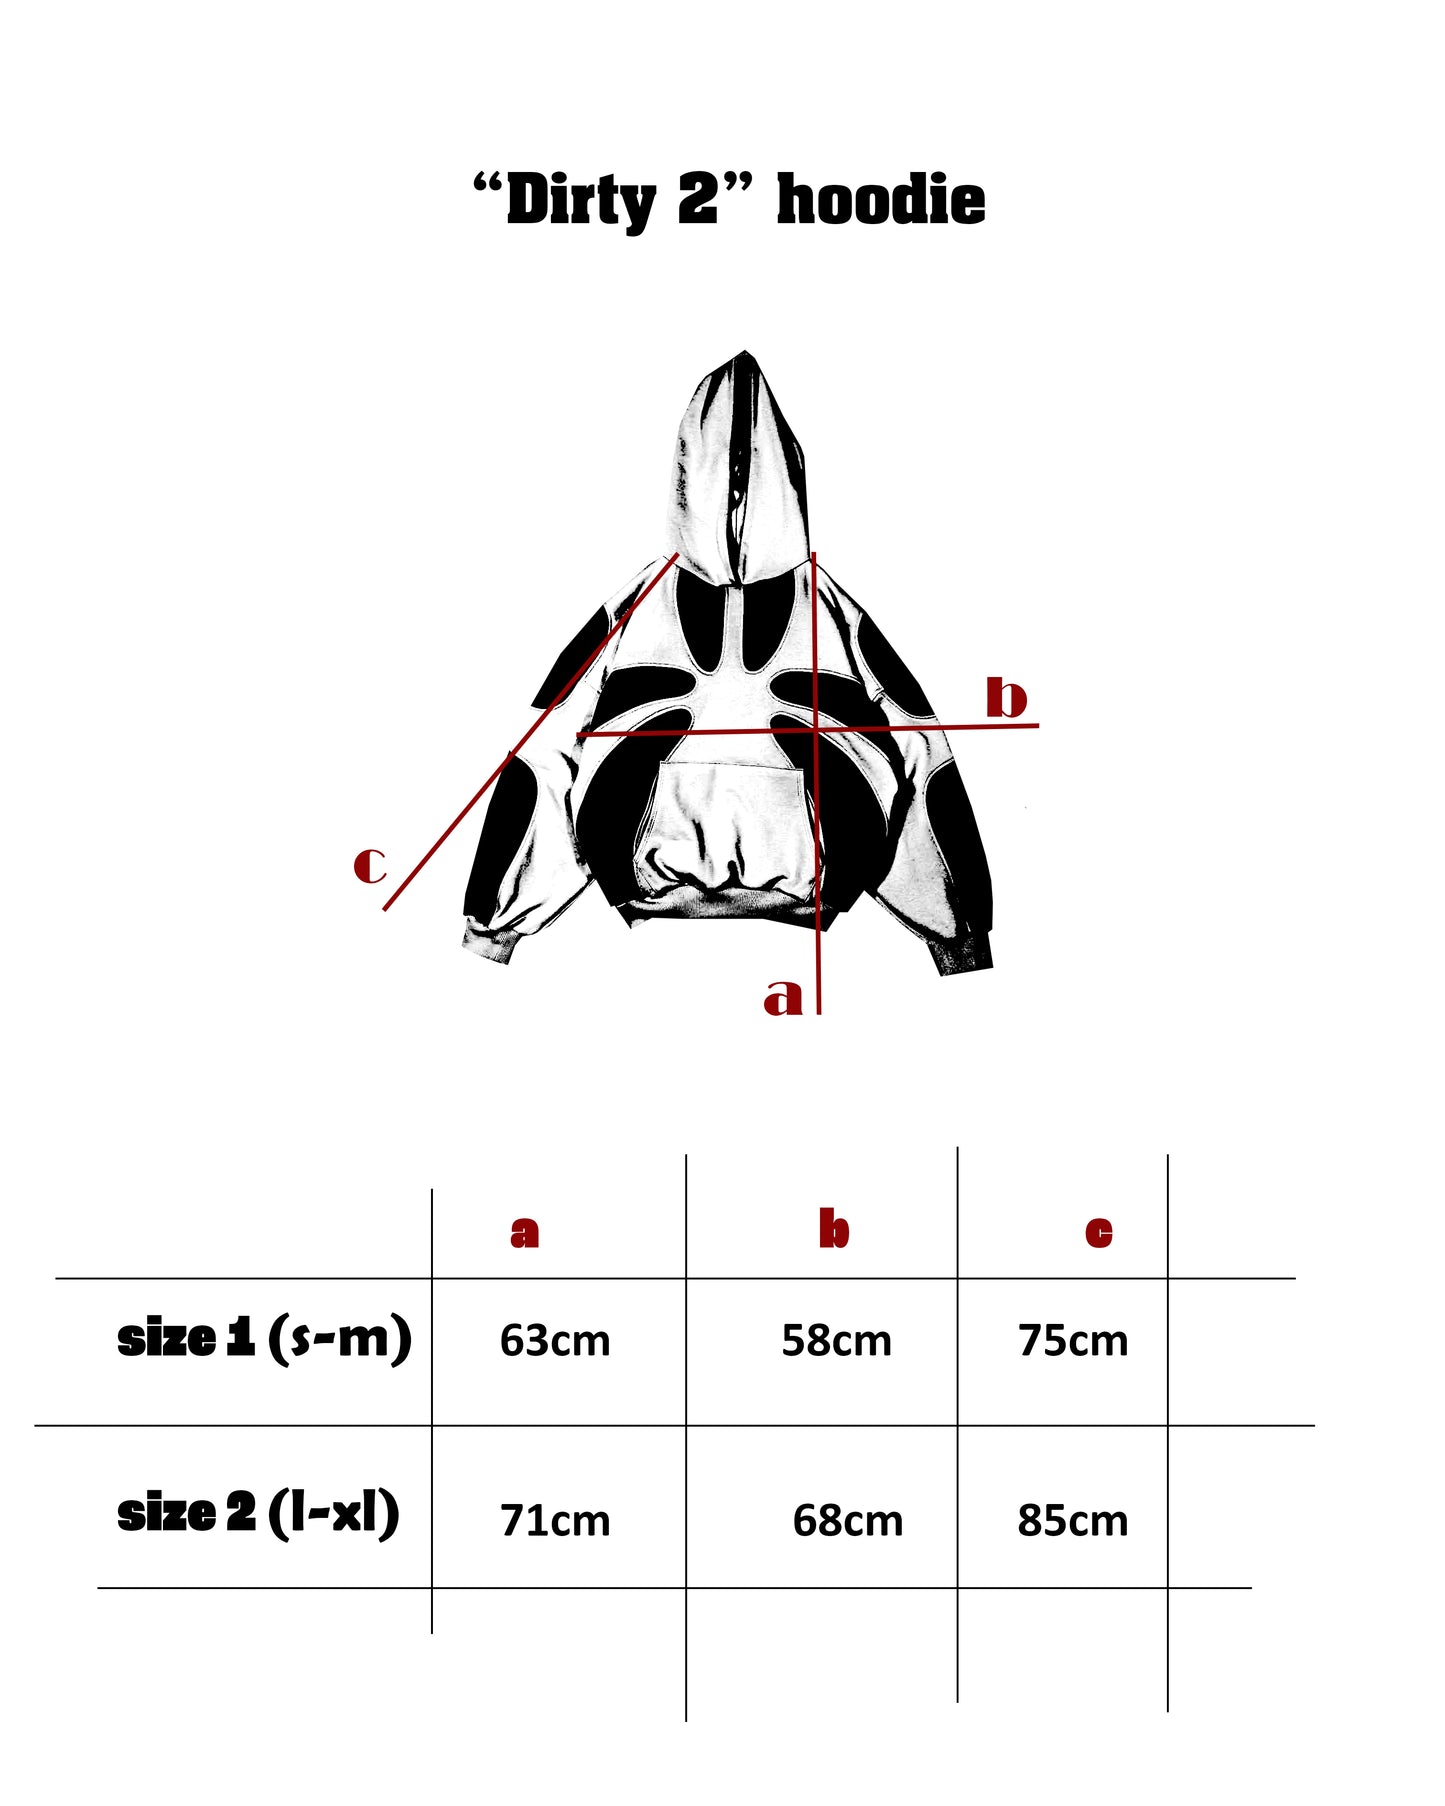 “Dirty 2” hoodie